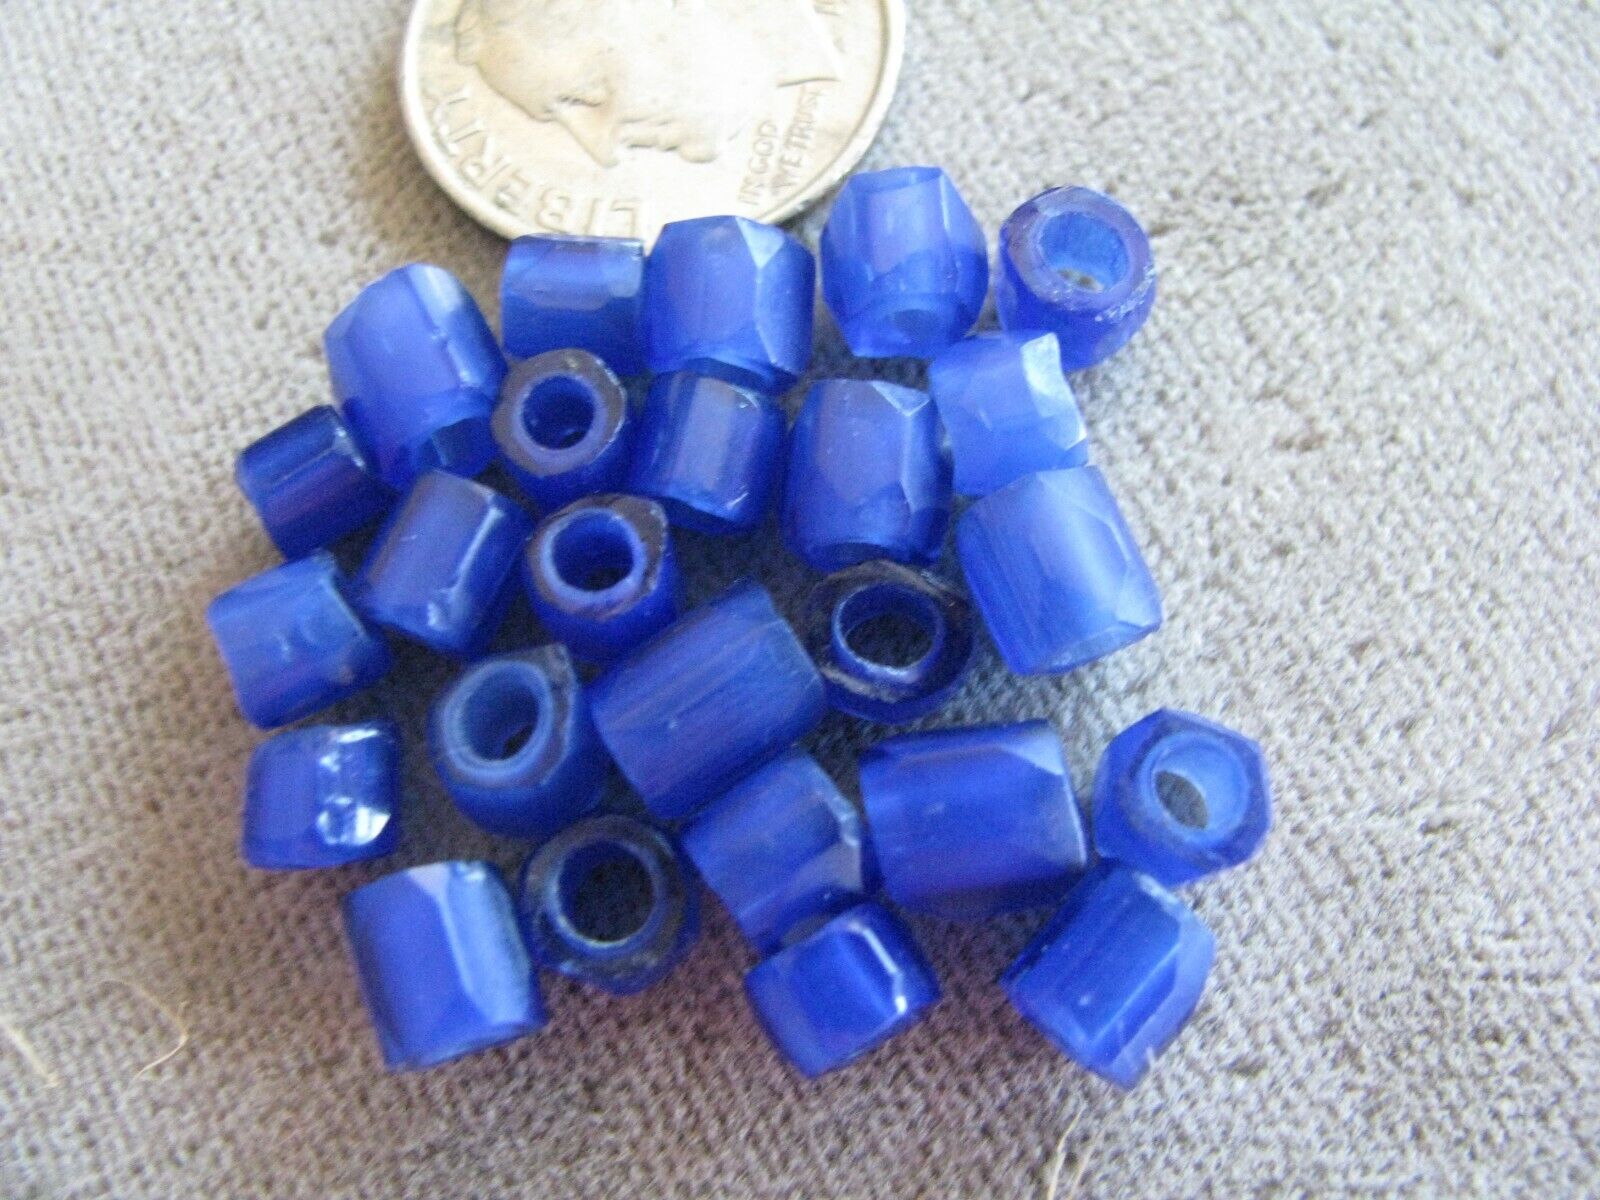 Lot of 25 Antique Czech Glass African Trade Beads Russian Blues 5mm Без бренда - фотография #4